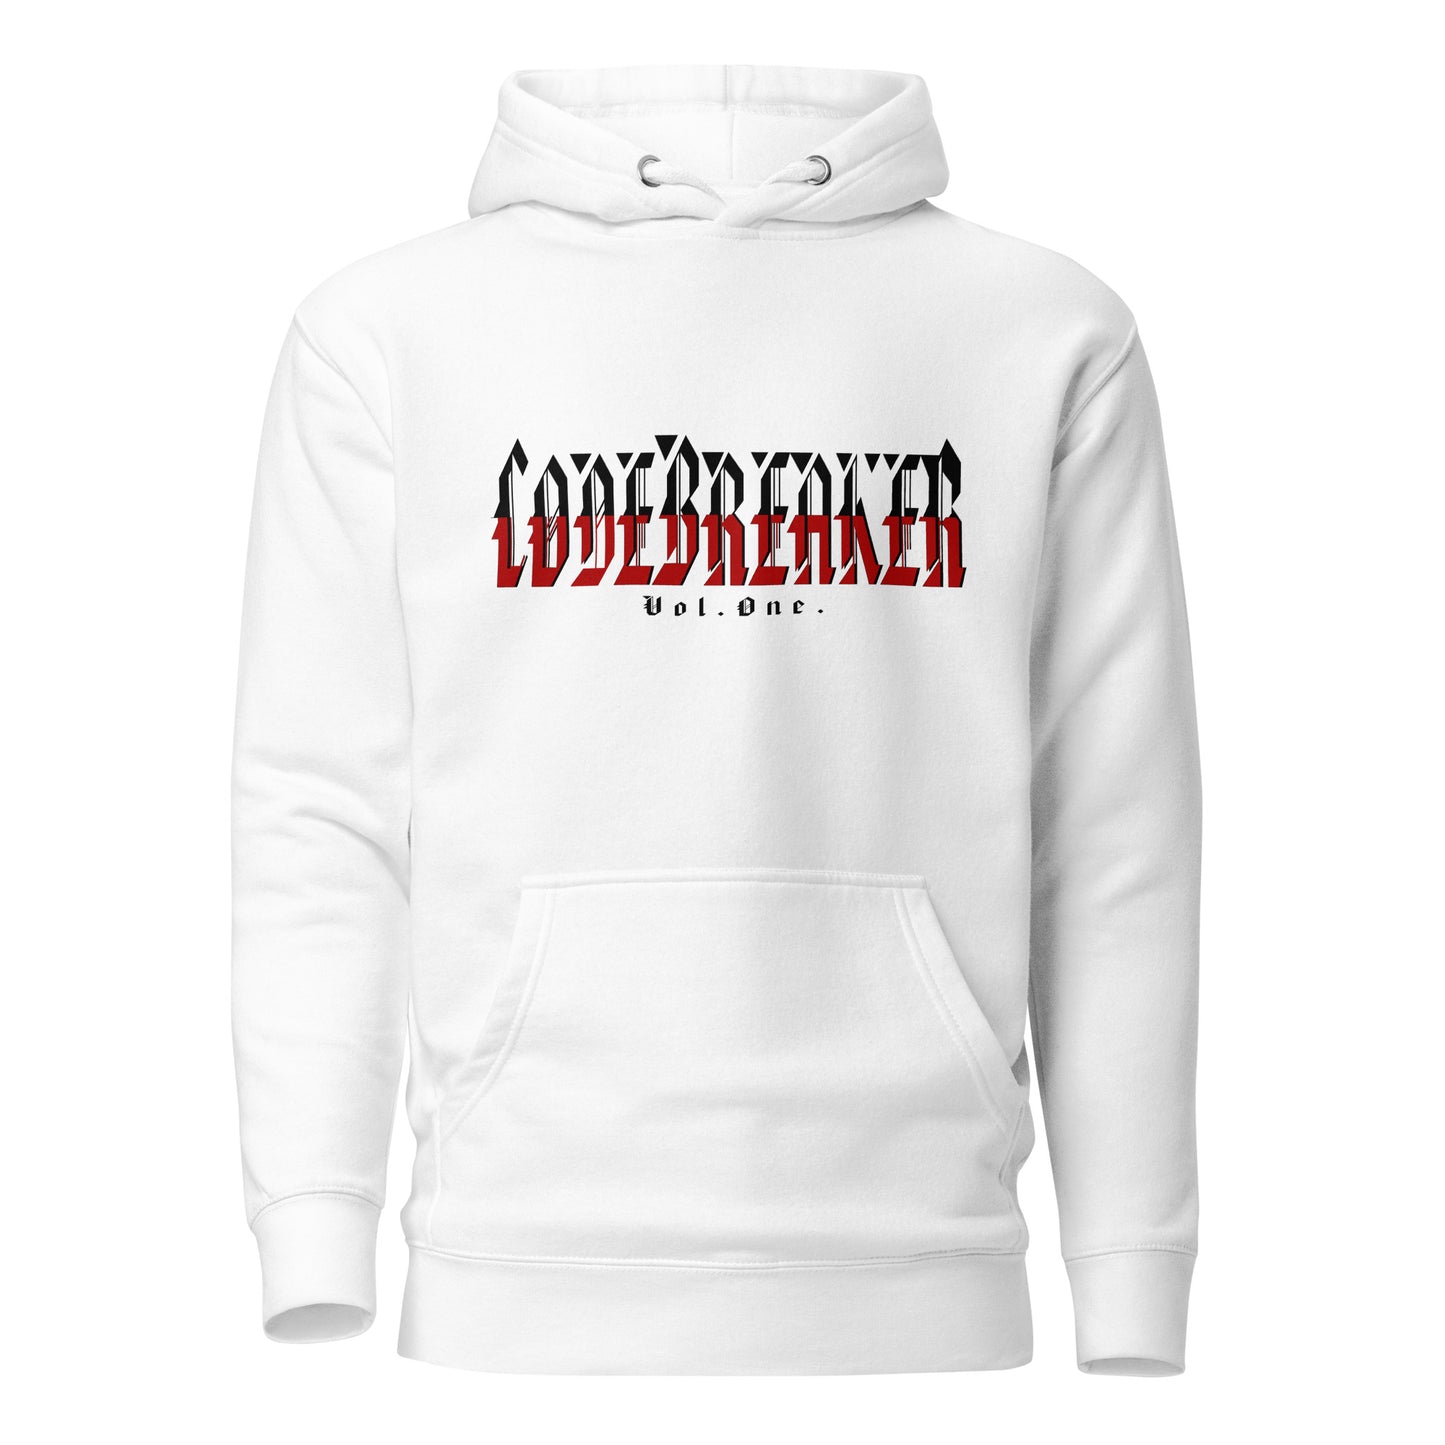 Codebreaker Vol.1 Unisex Hoodie